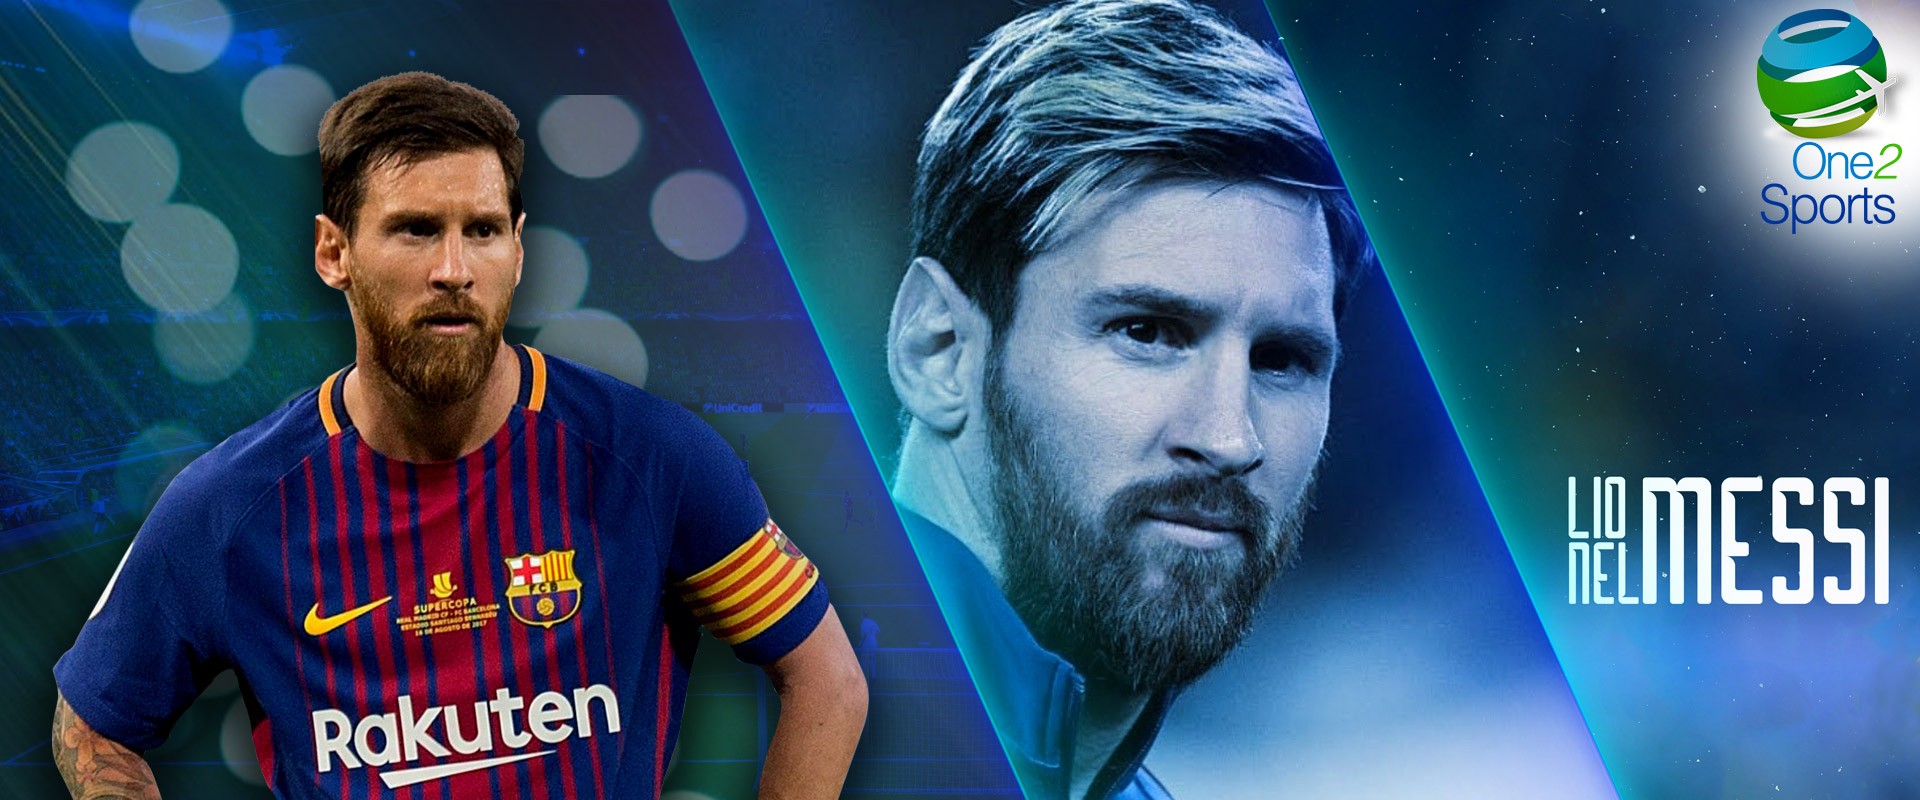 Por qué Lionel Messi es el mejor futbolista del mundo